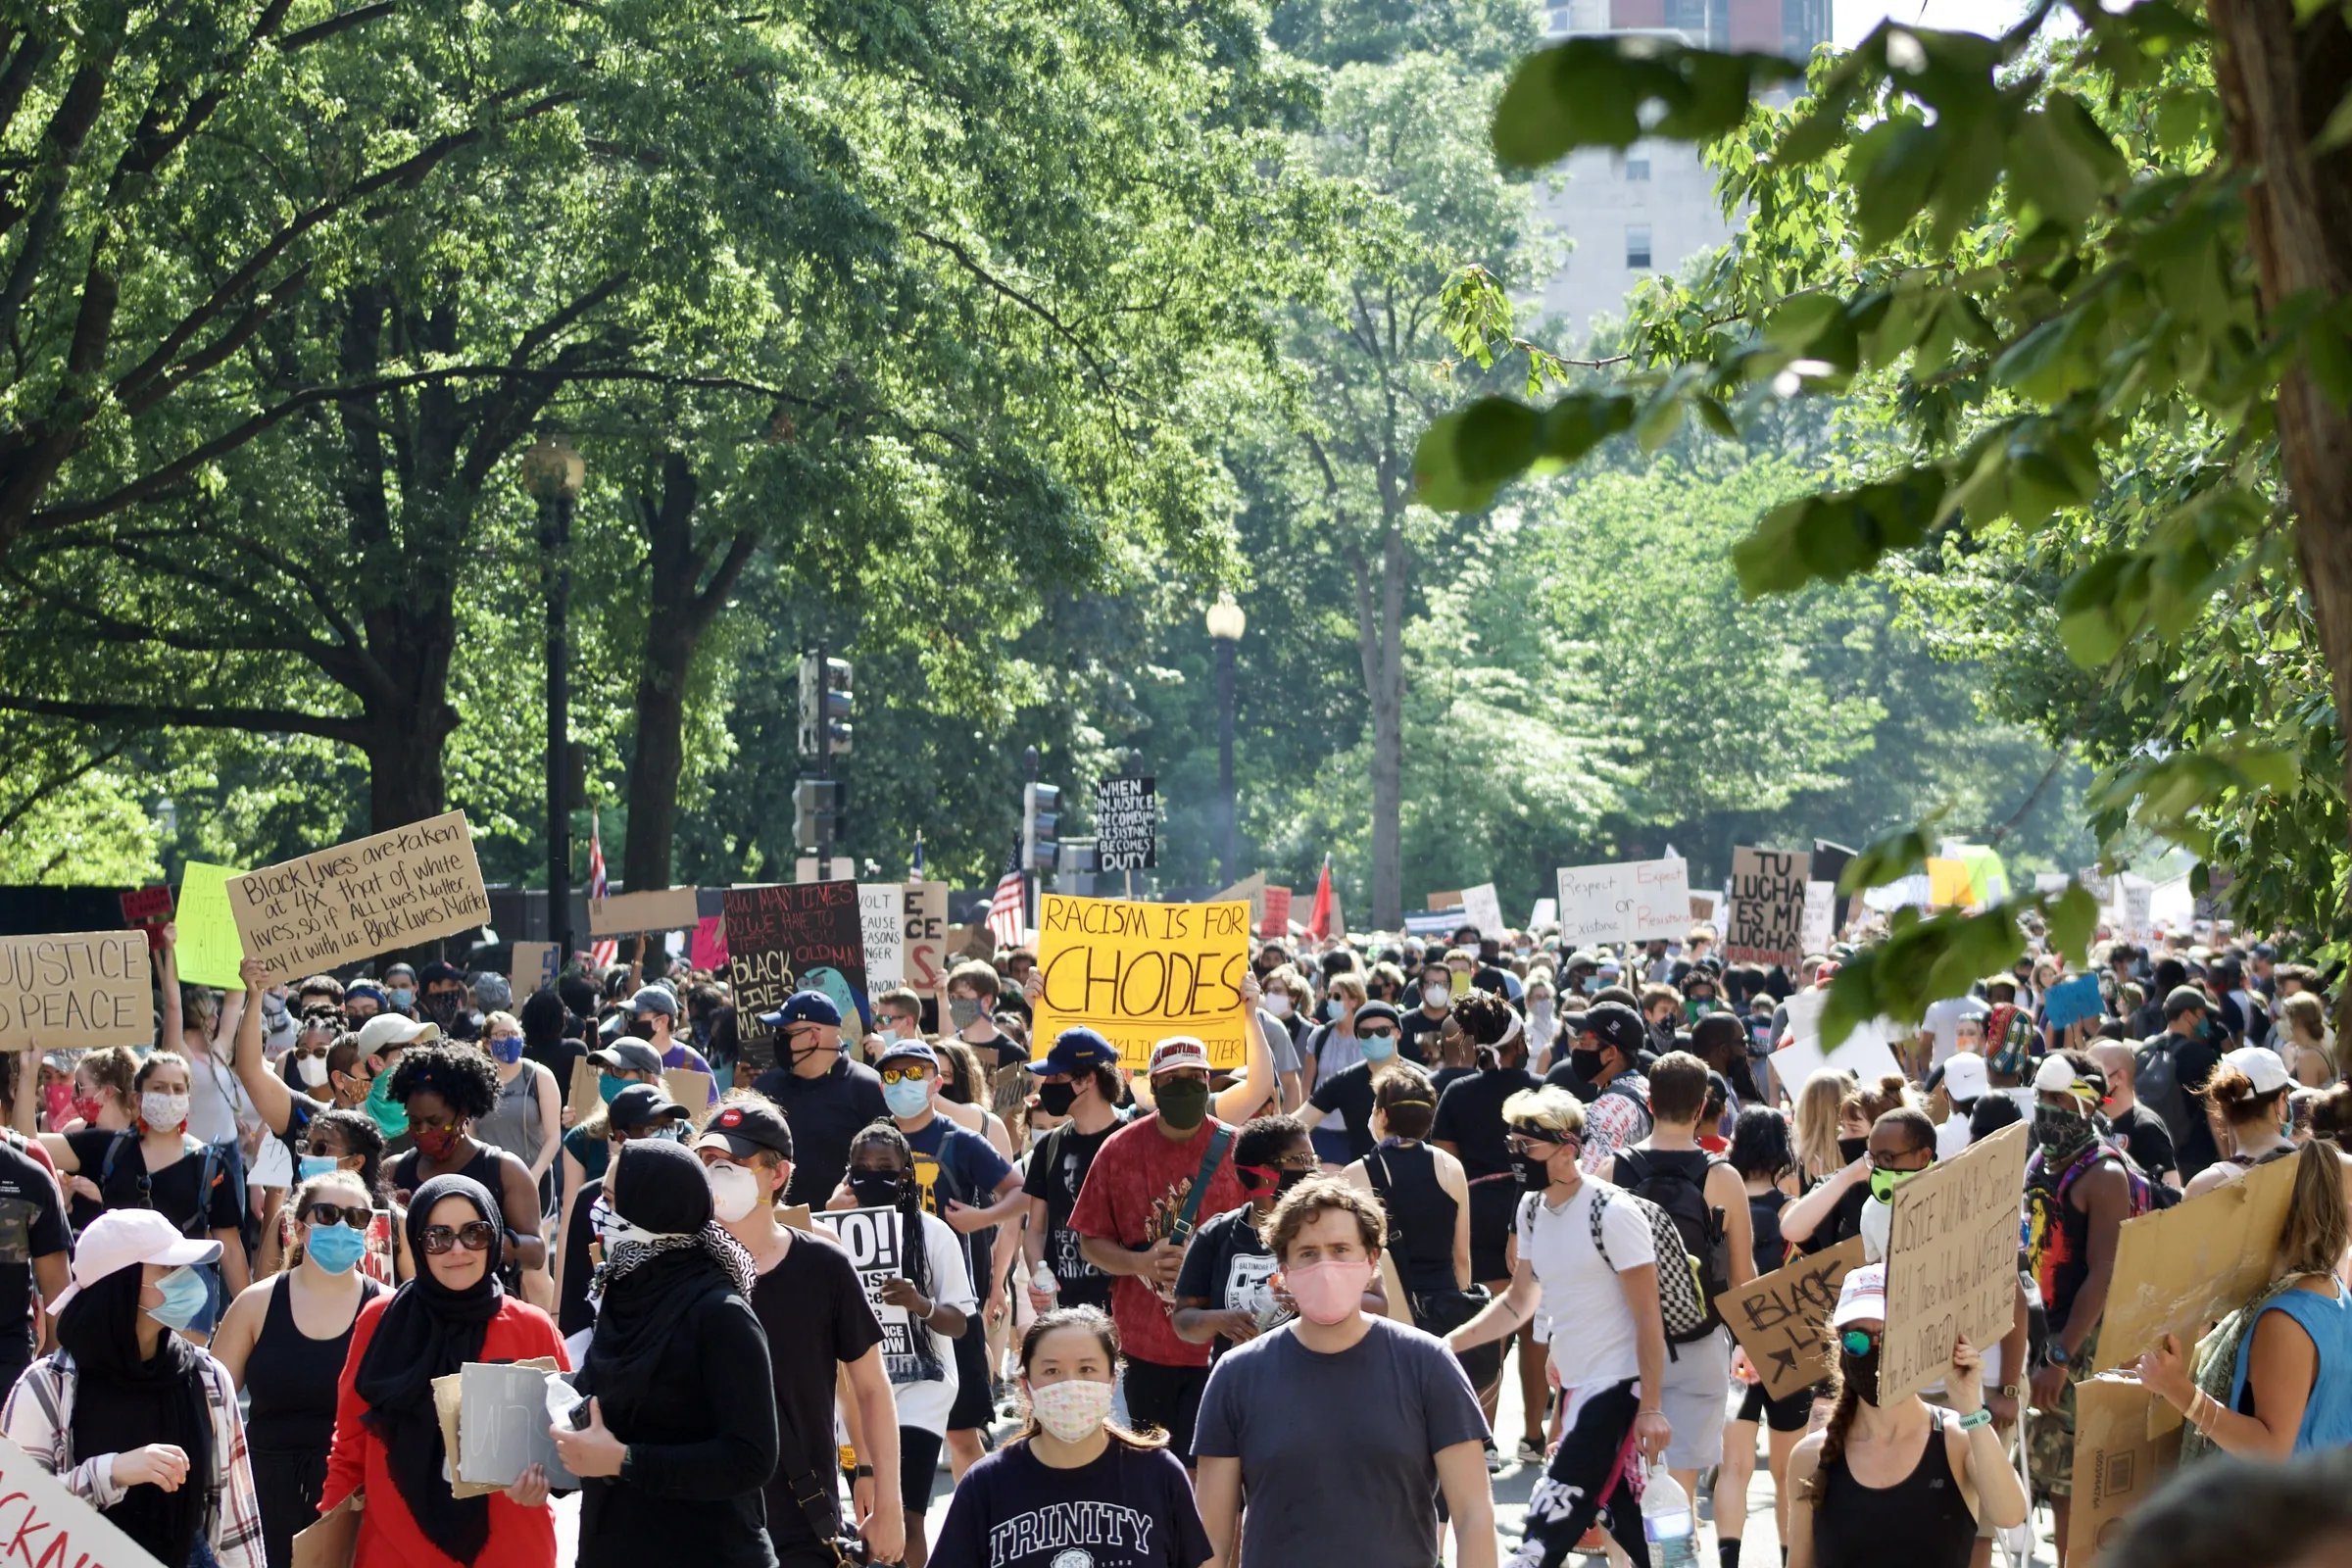 Black Lives Matter protest in Washington DC